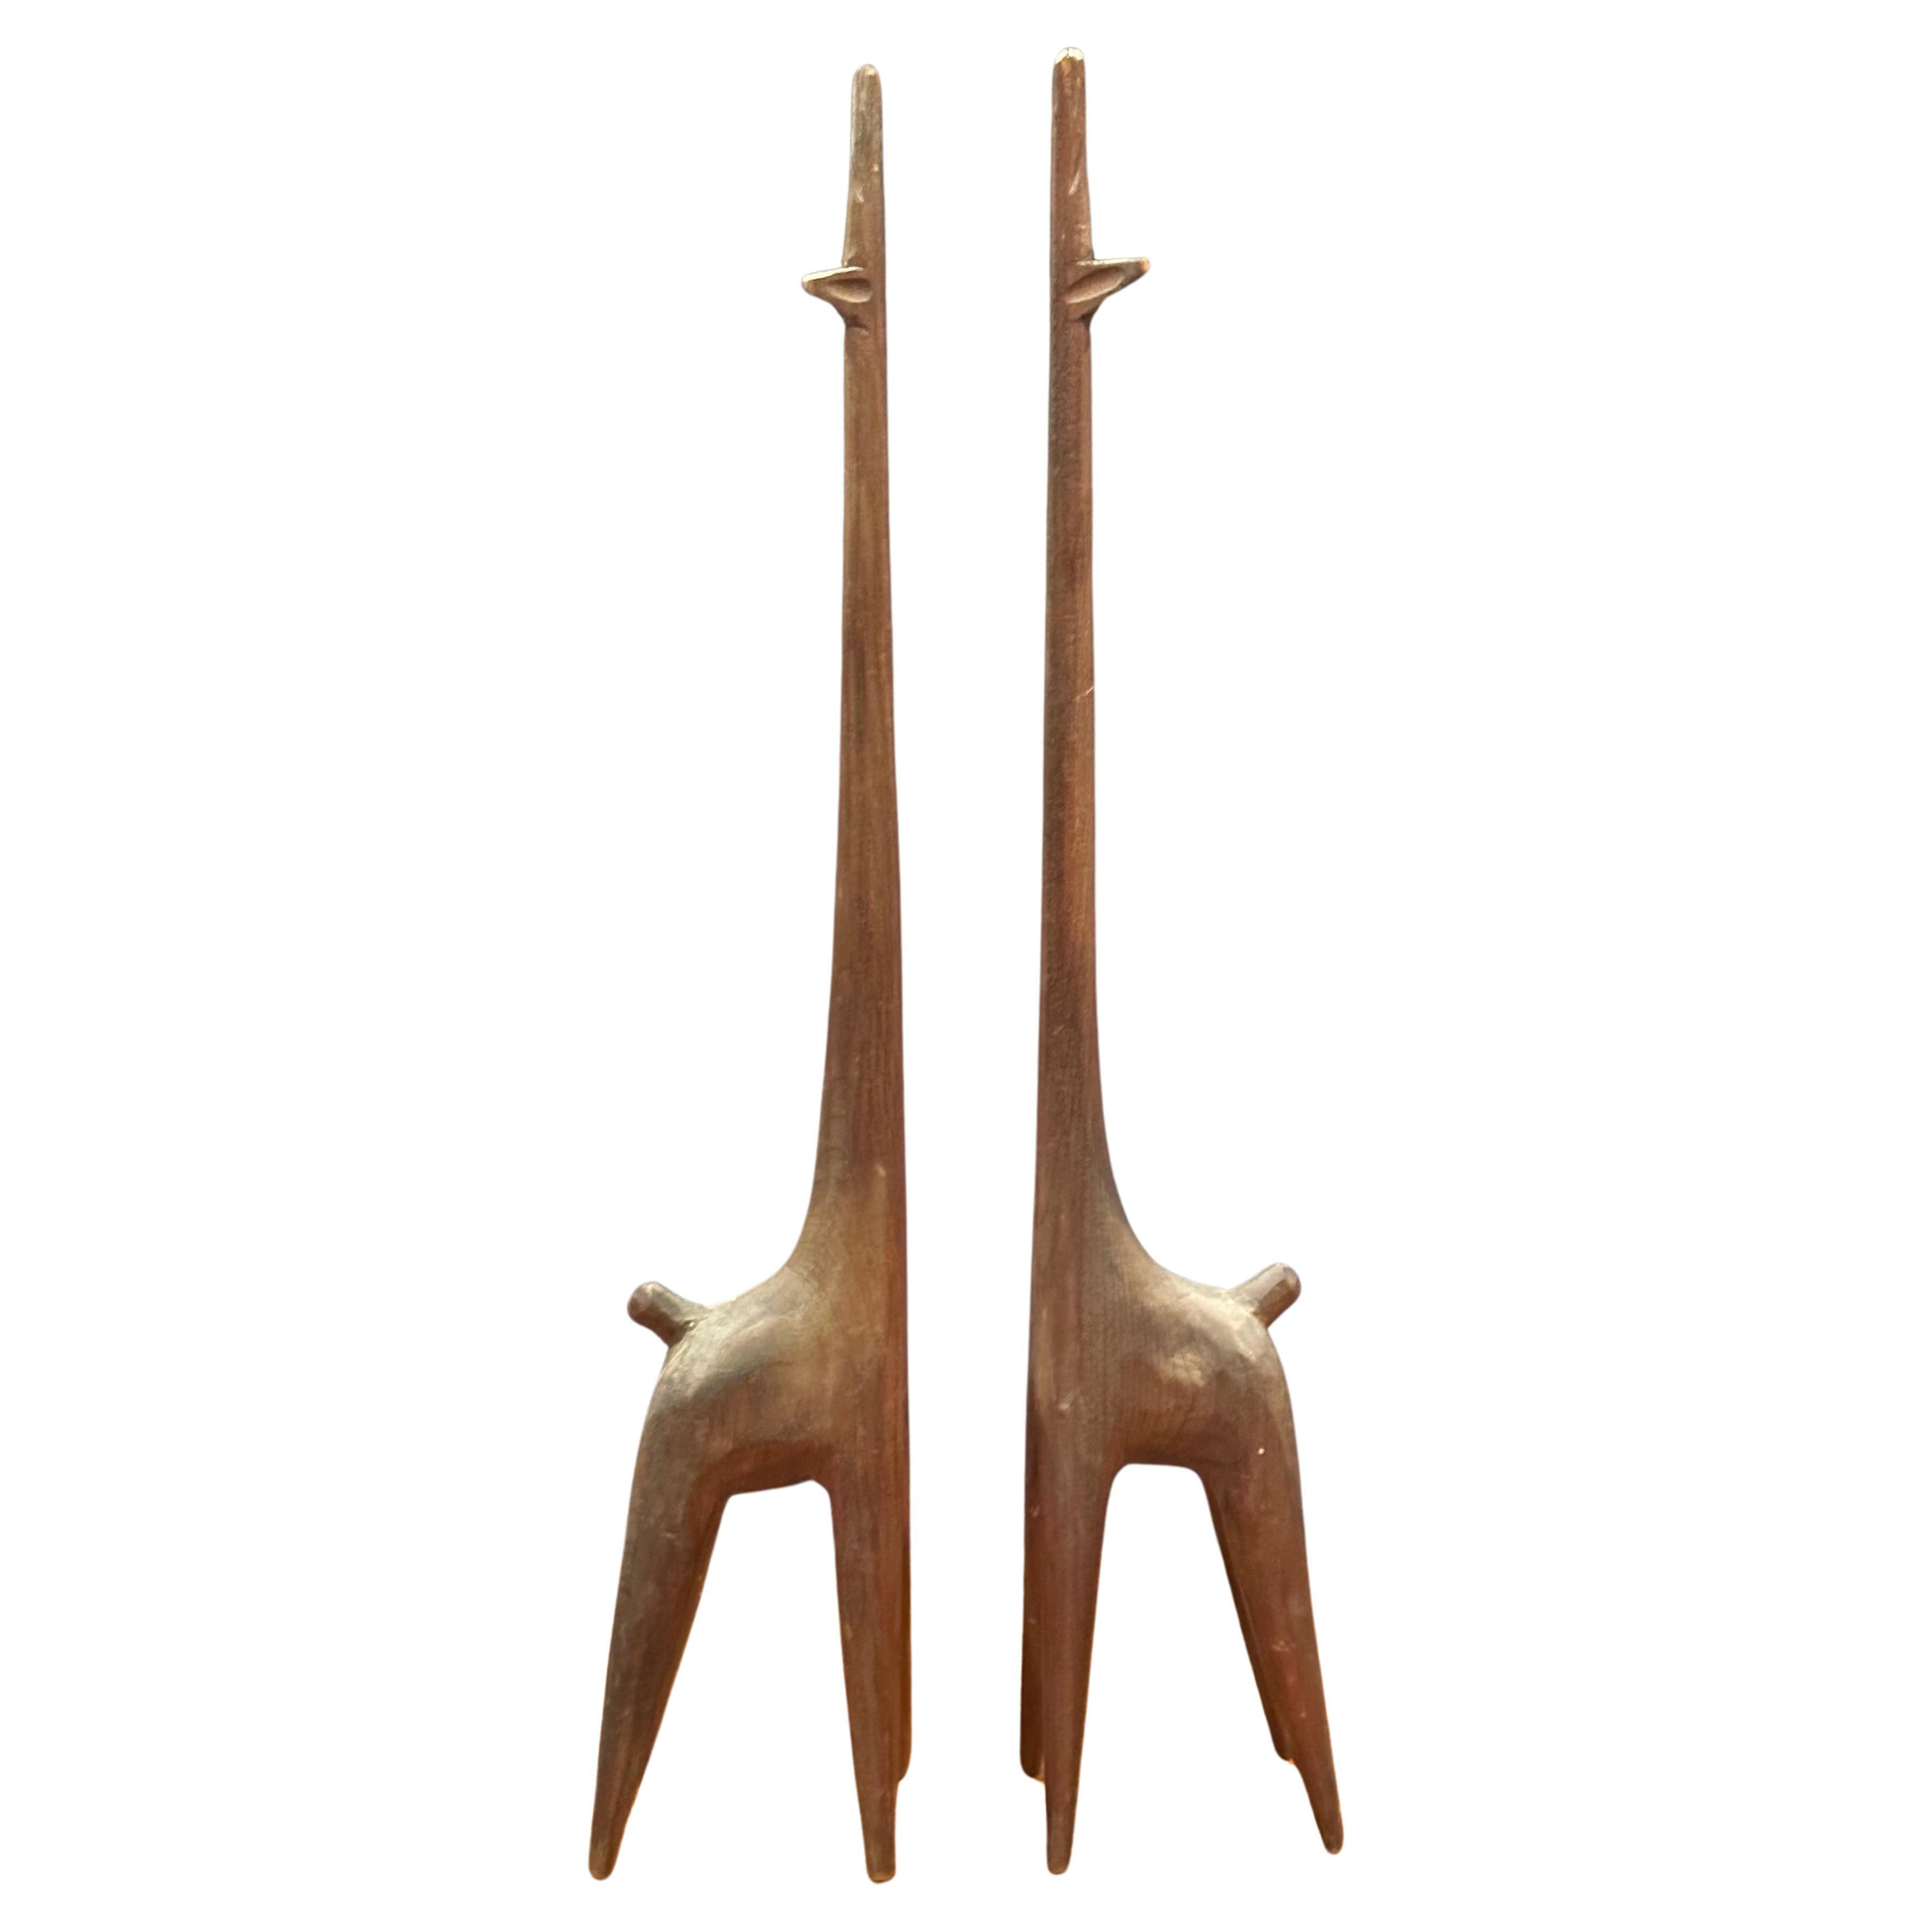 Super cooles Paar modernistischer Giraffen-Skulpturen aus geschnitztem Holz (Walnuss?), circa 1960er Jahre. Die Skulpturen sind handgeschnitzt und messen: 2 